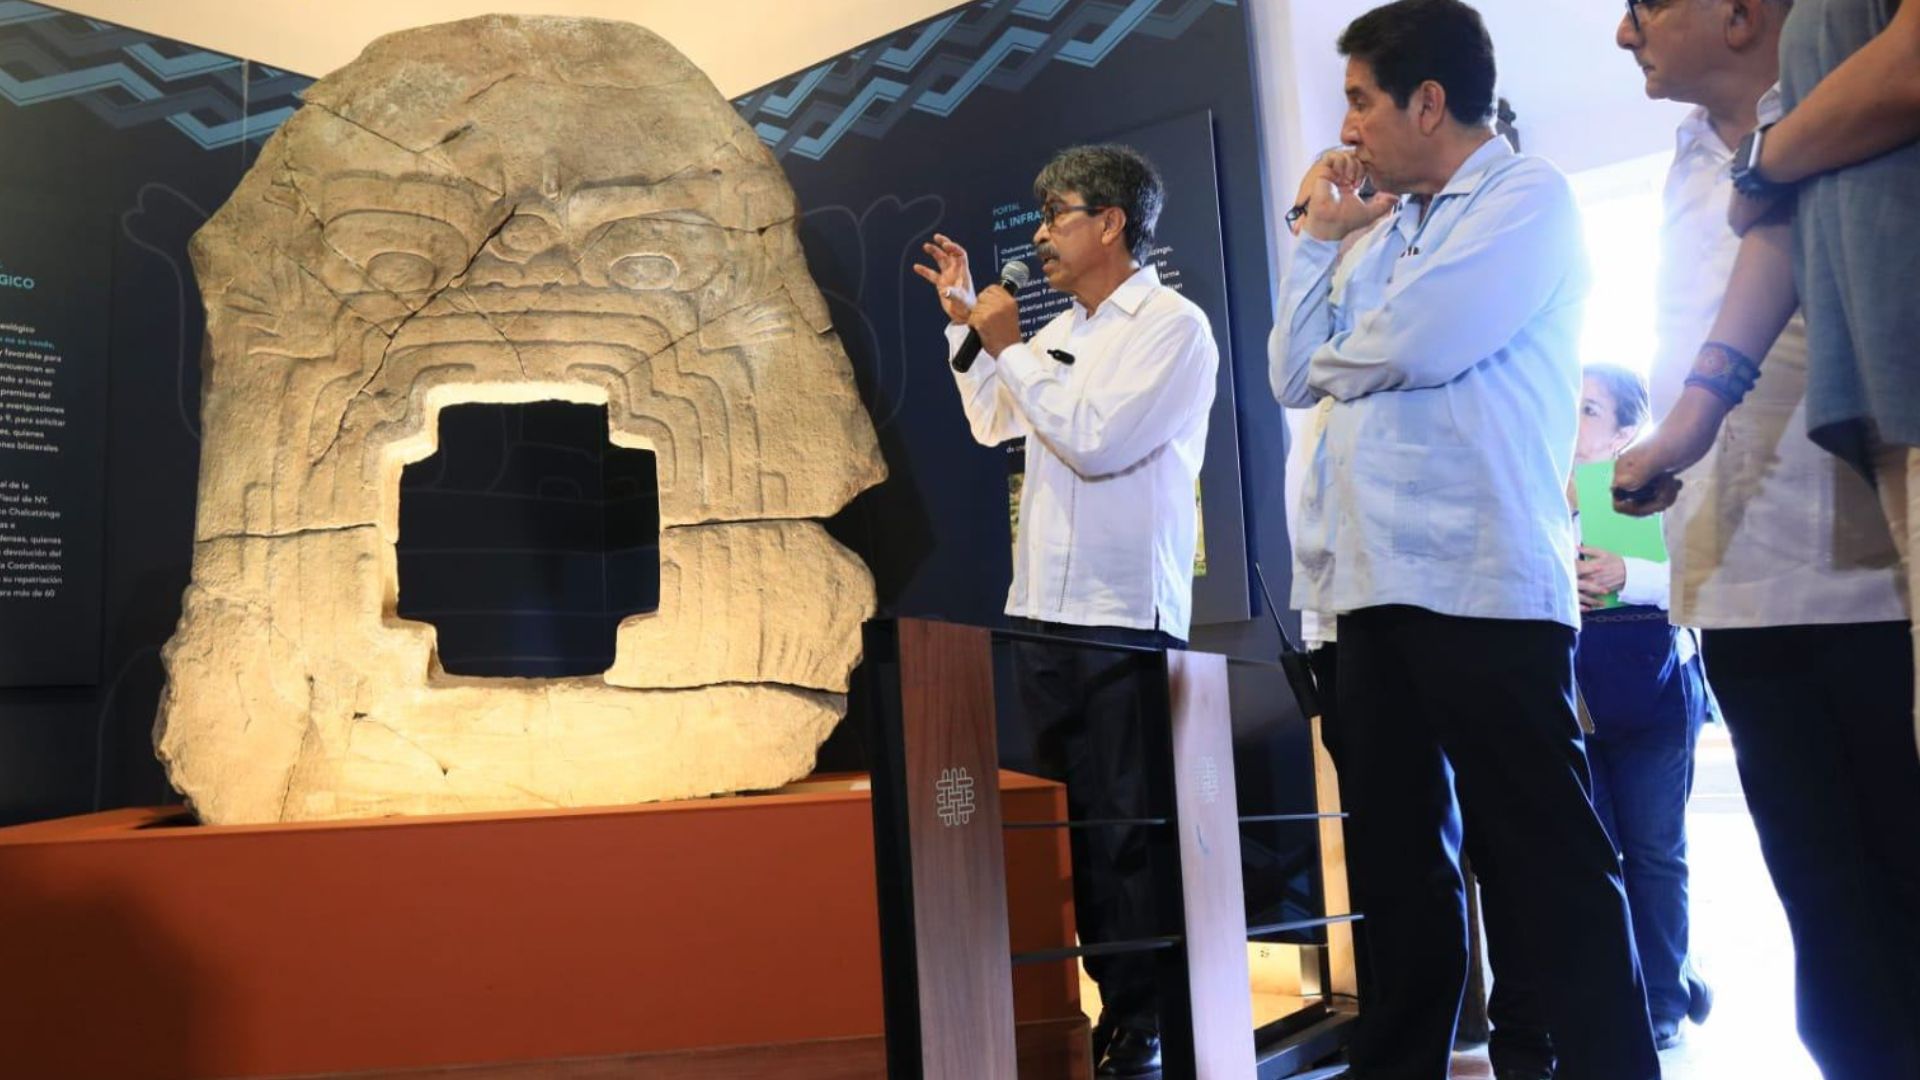 El Monumento 9 de Chalcatzingo, la escultura olmeca también conocida como el “Portal al inframundo”, regresó a Morelos.
(@INAHmx)